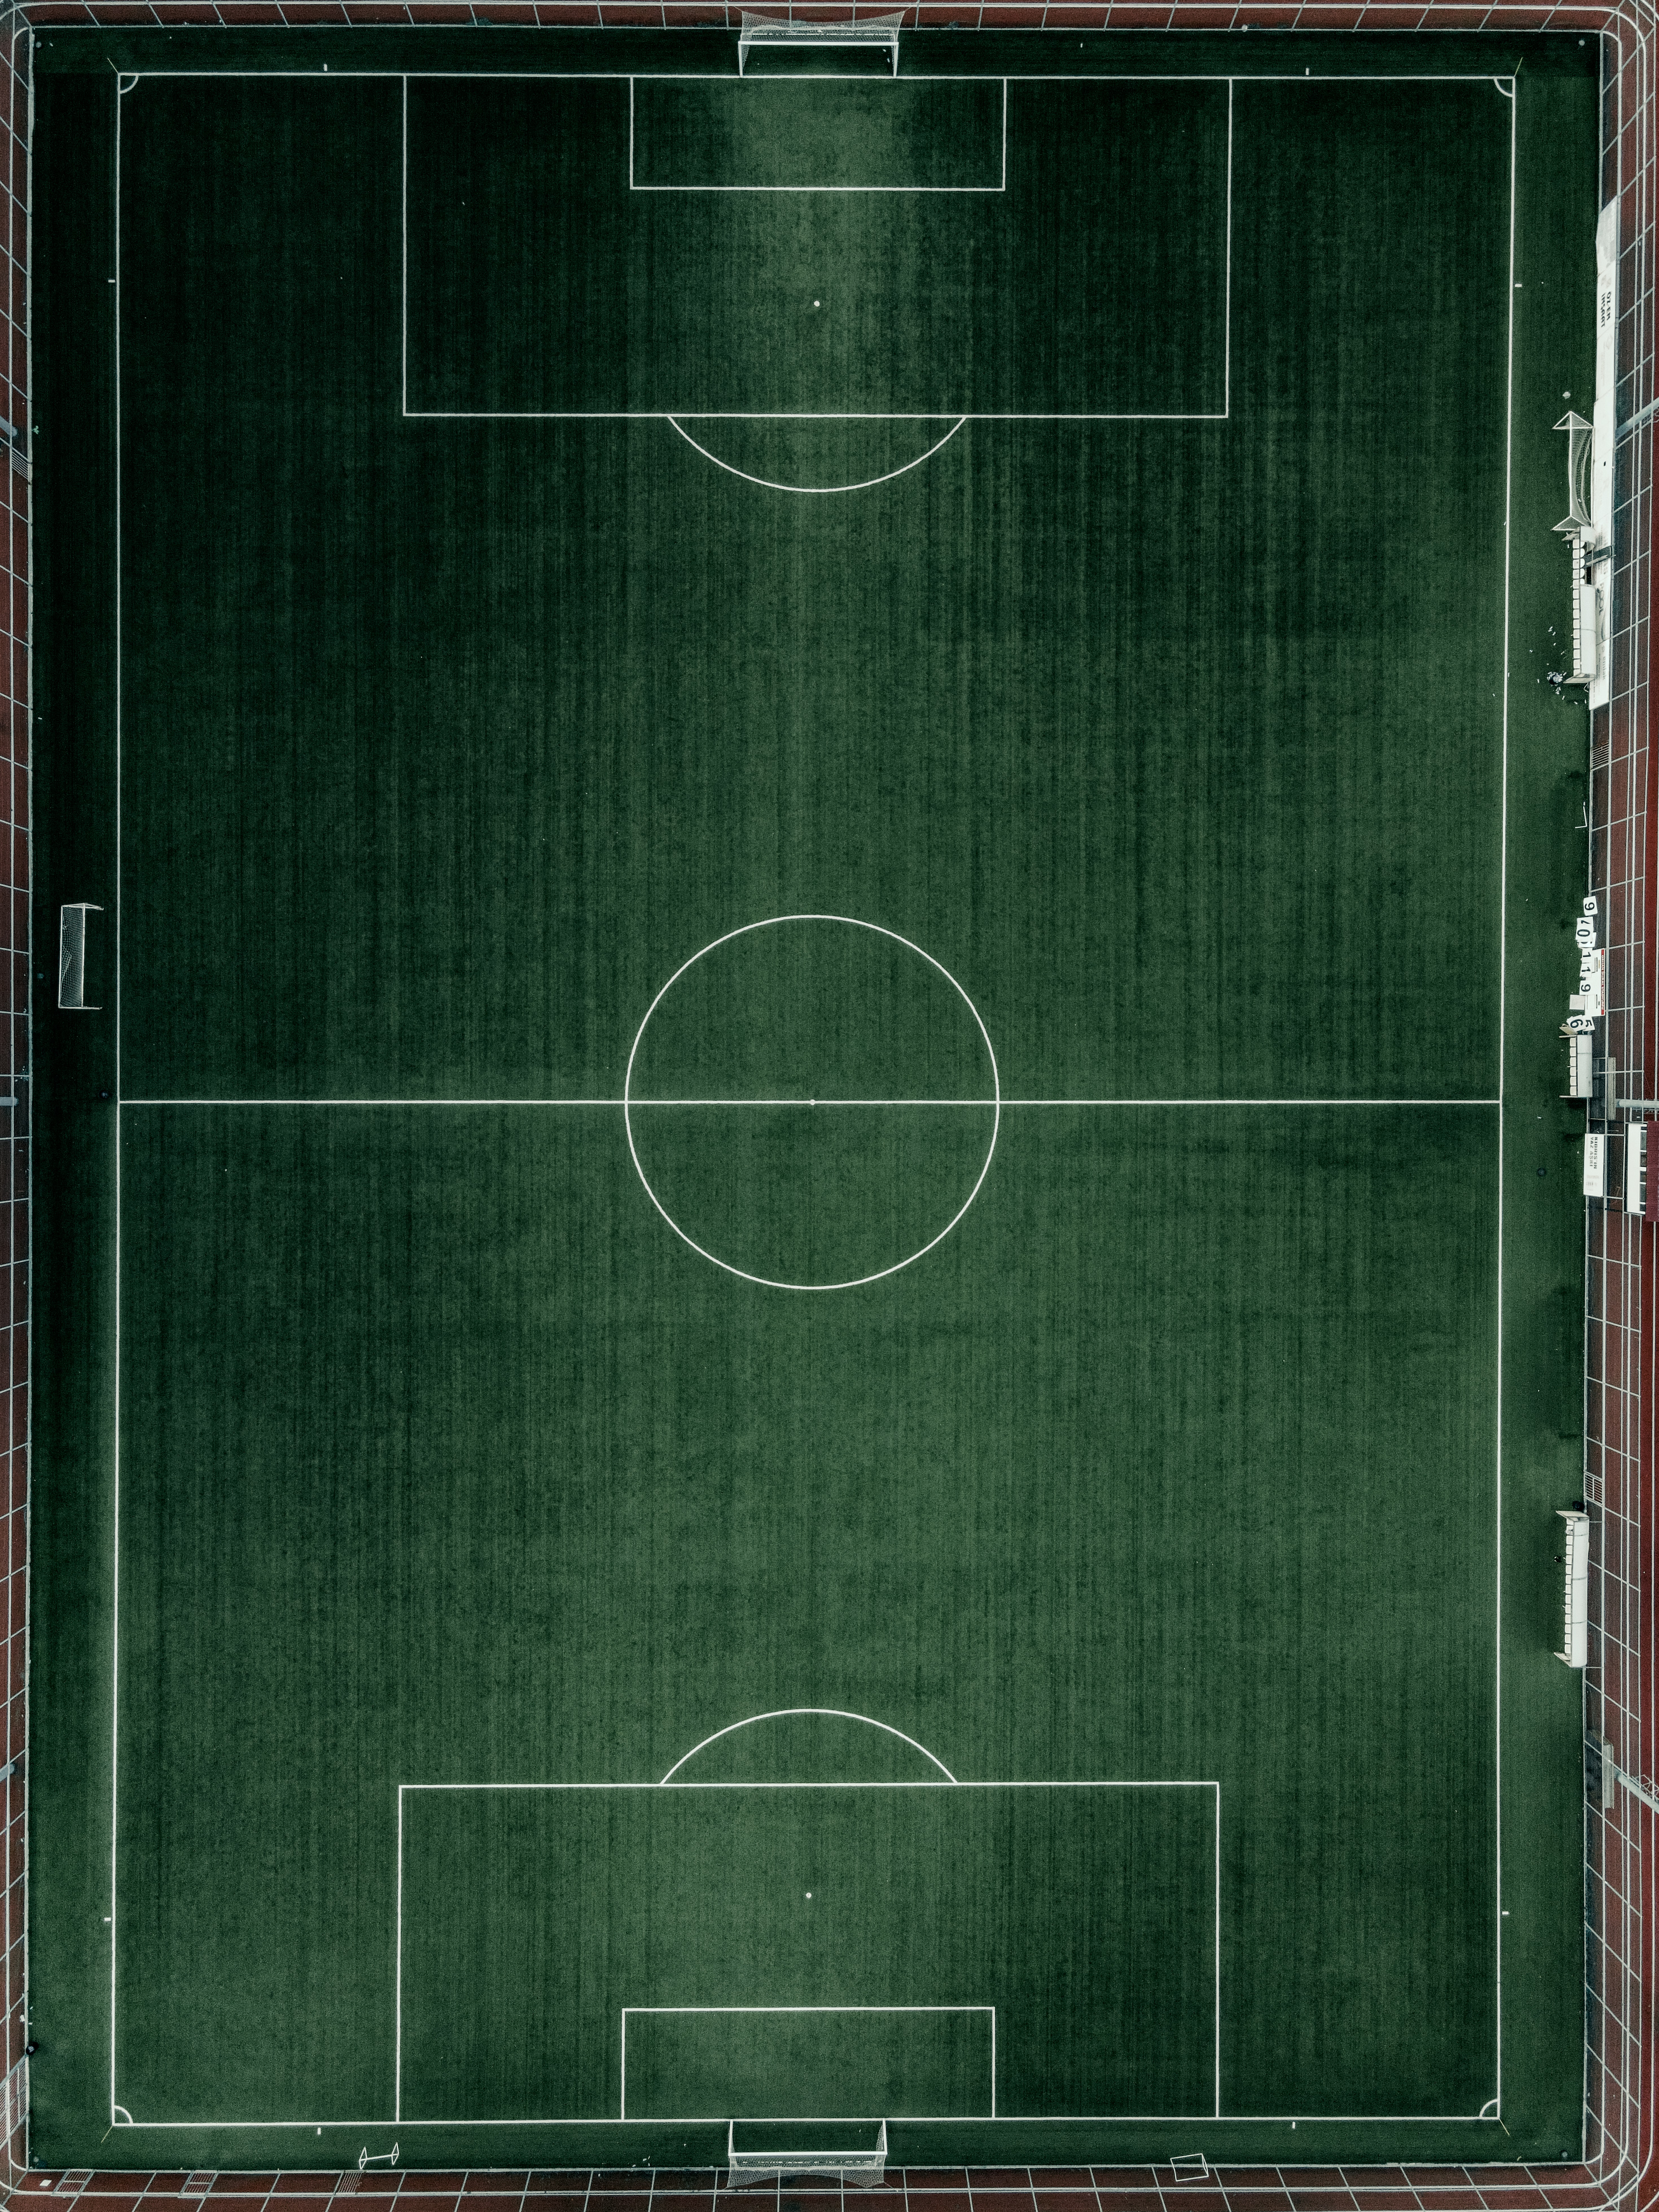 97790 скачать обои футбольное поле, футбол, спорт, газон, зеленый, вид сверху - заставки и картинки бесплатно